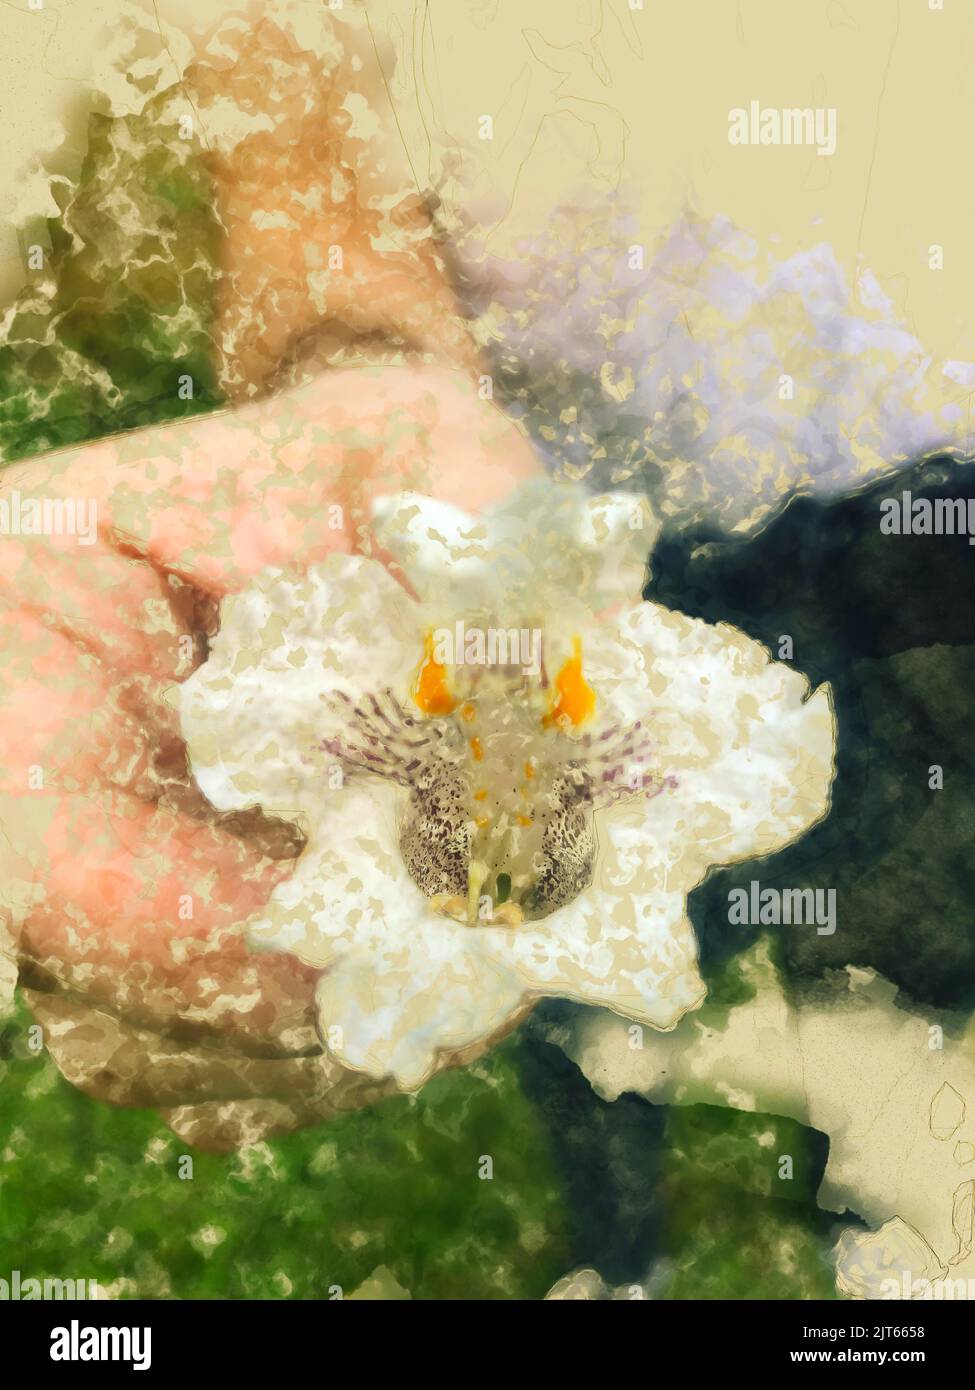 Aquarelle illustration romantique de la main d'une personne donnant une fleur blanche Illustration de Vecteur